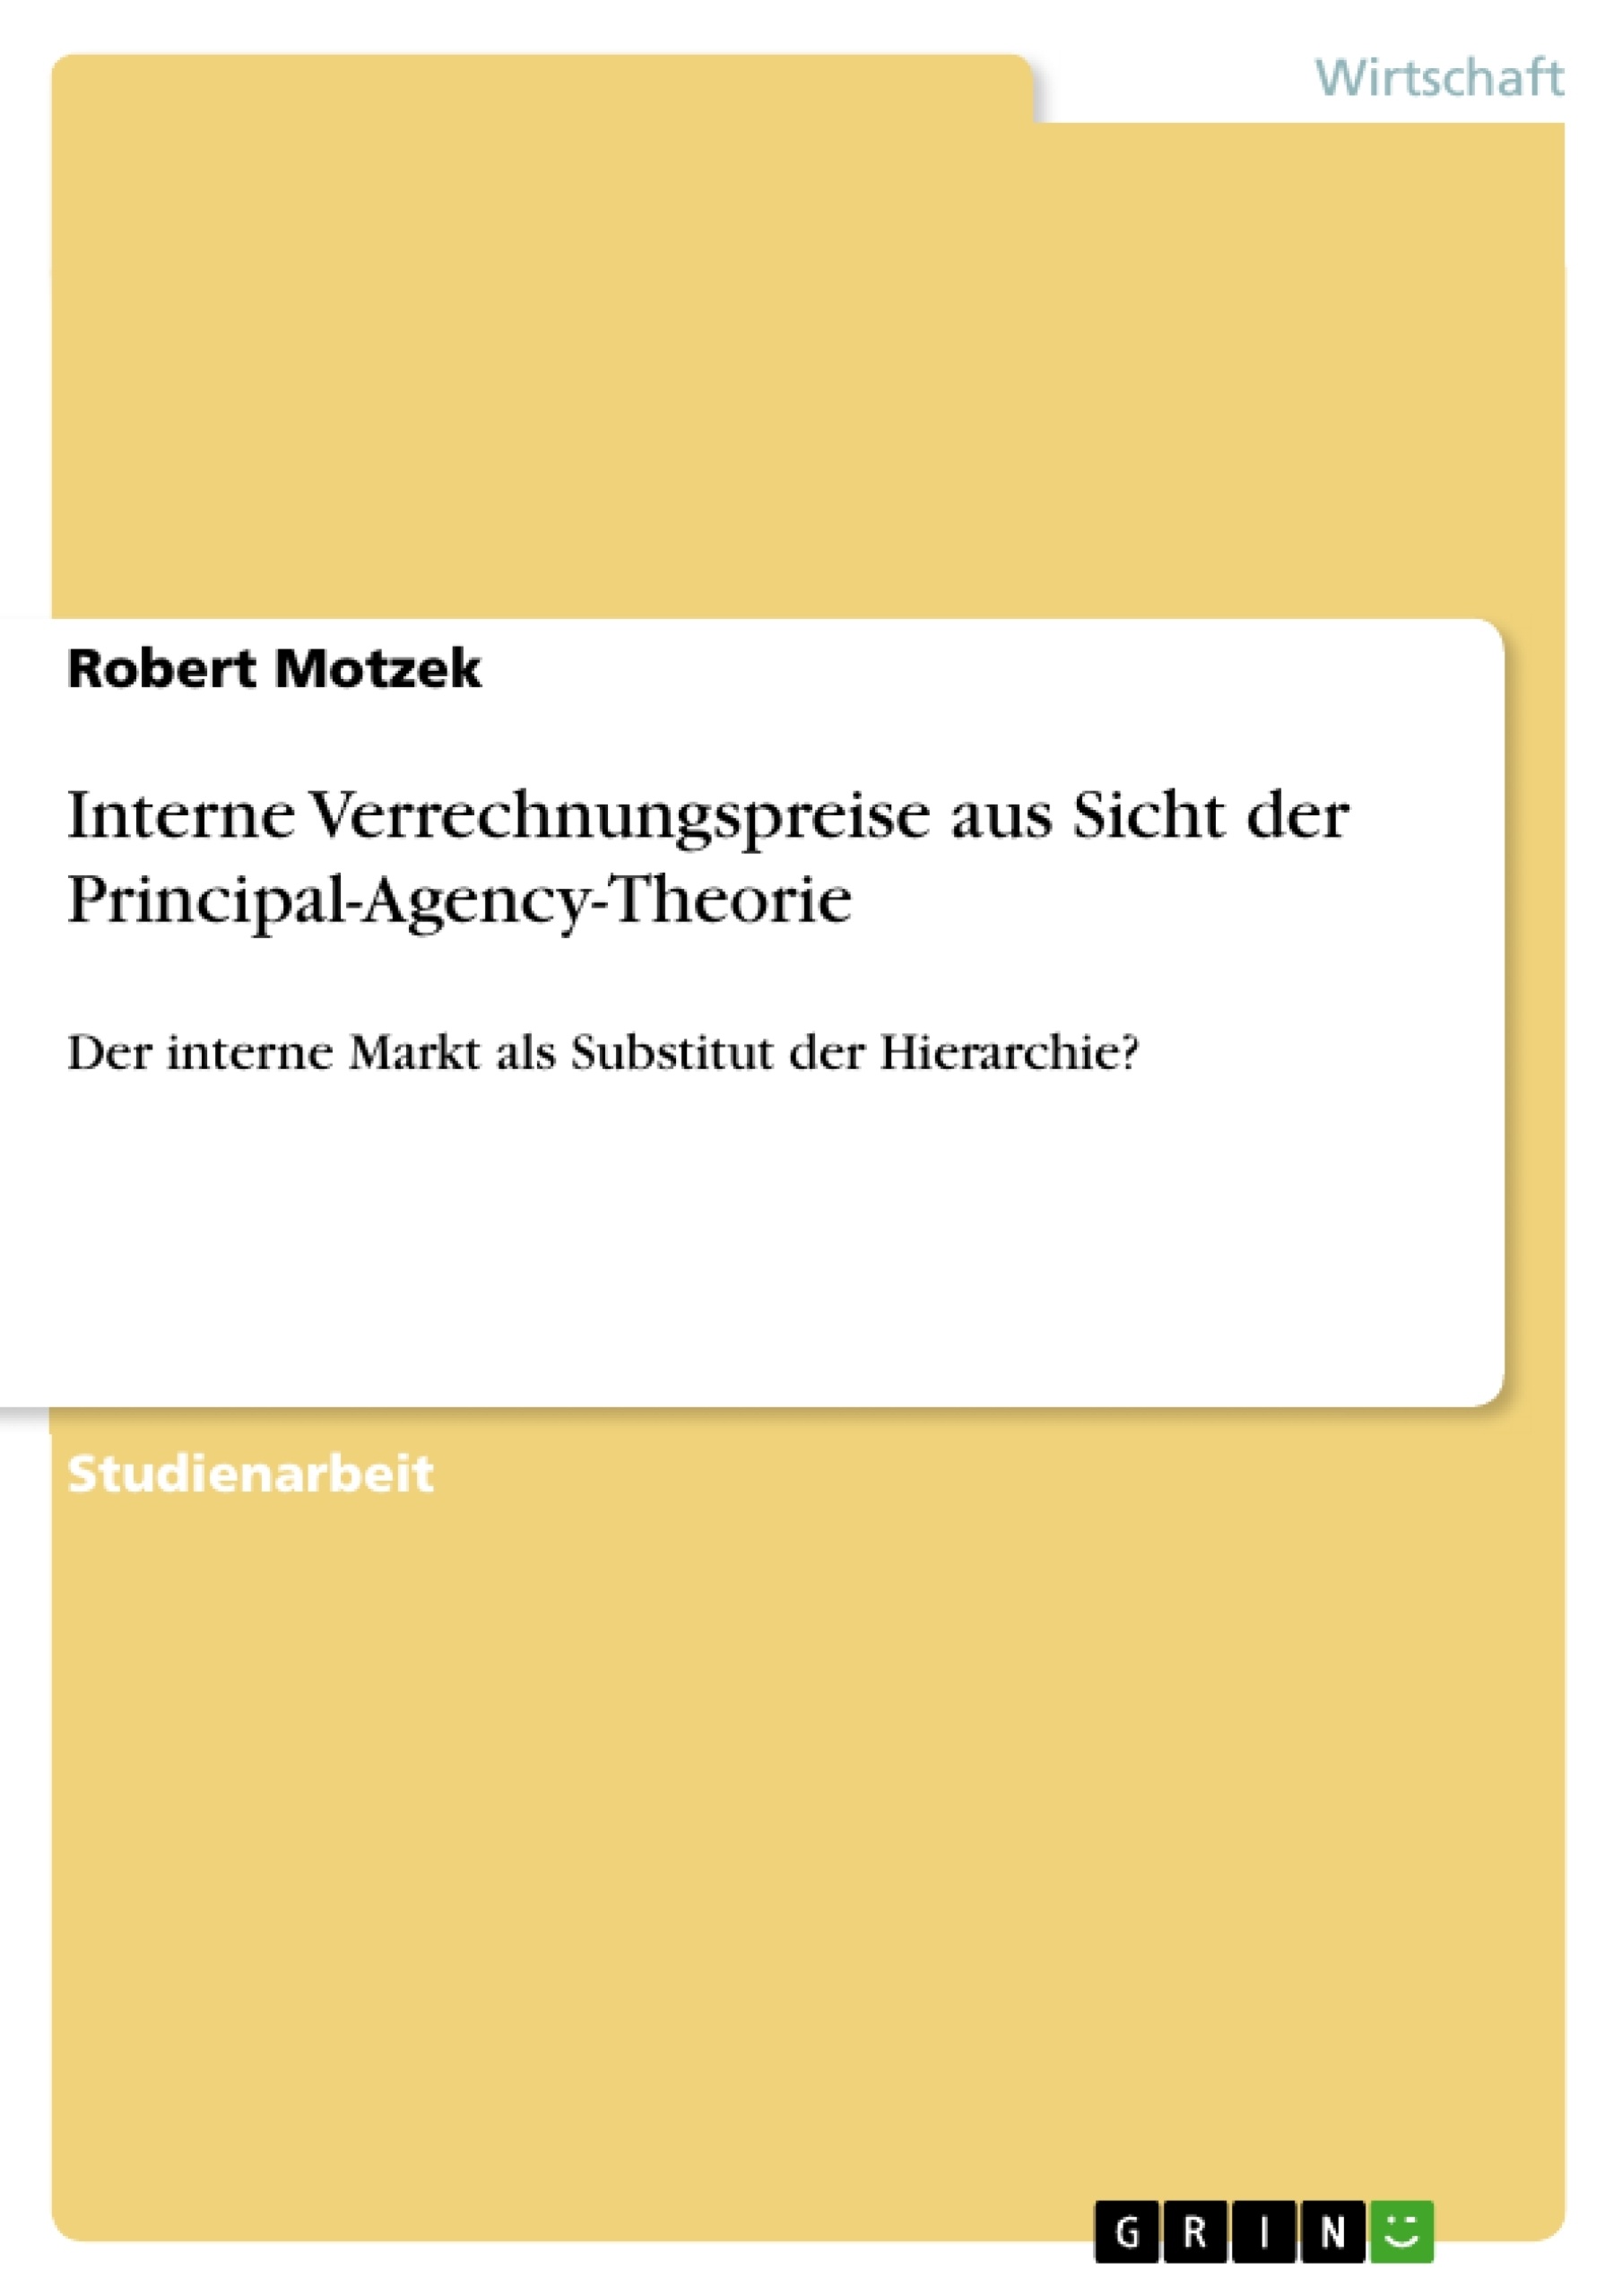 Título: Interne Verrechnungspreise aus Sicht der Principal-Agency-Theorie